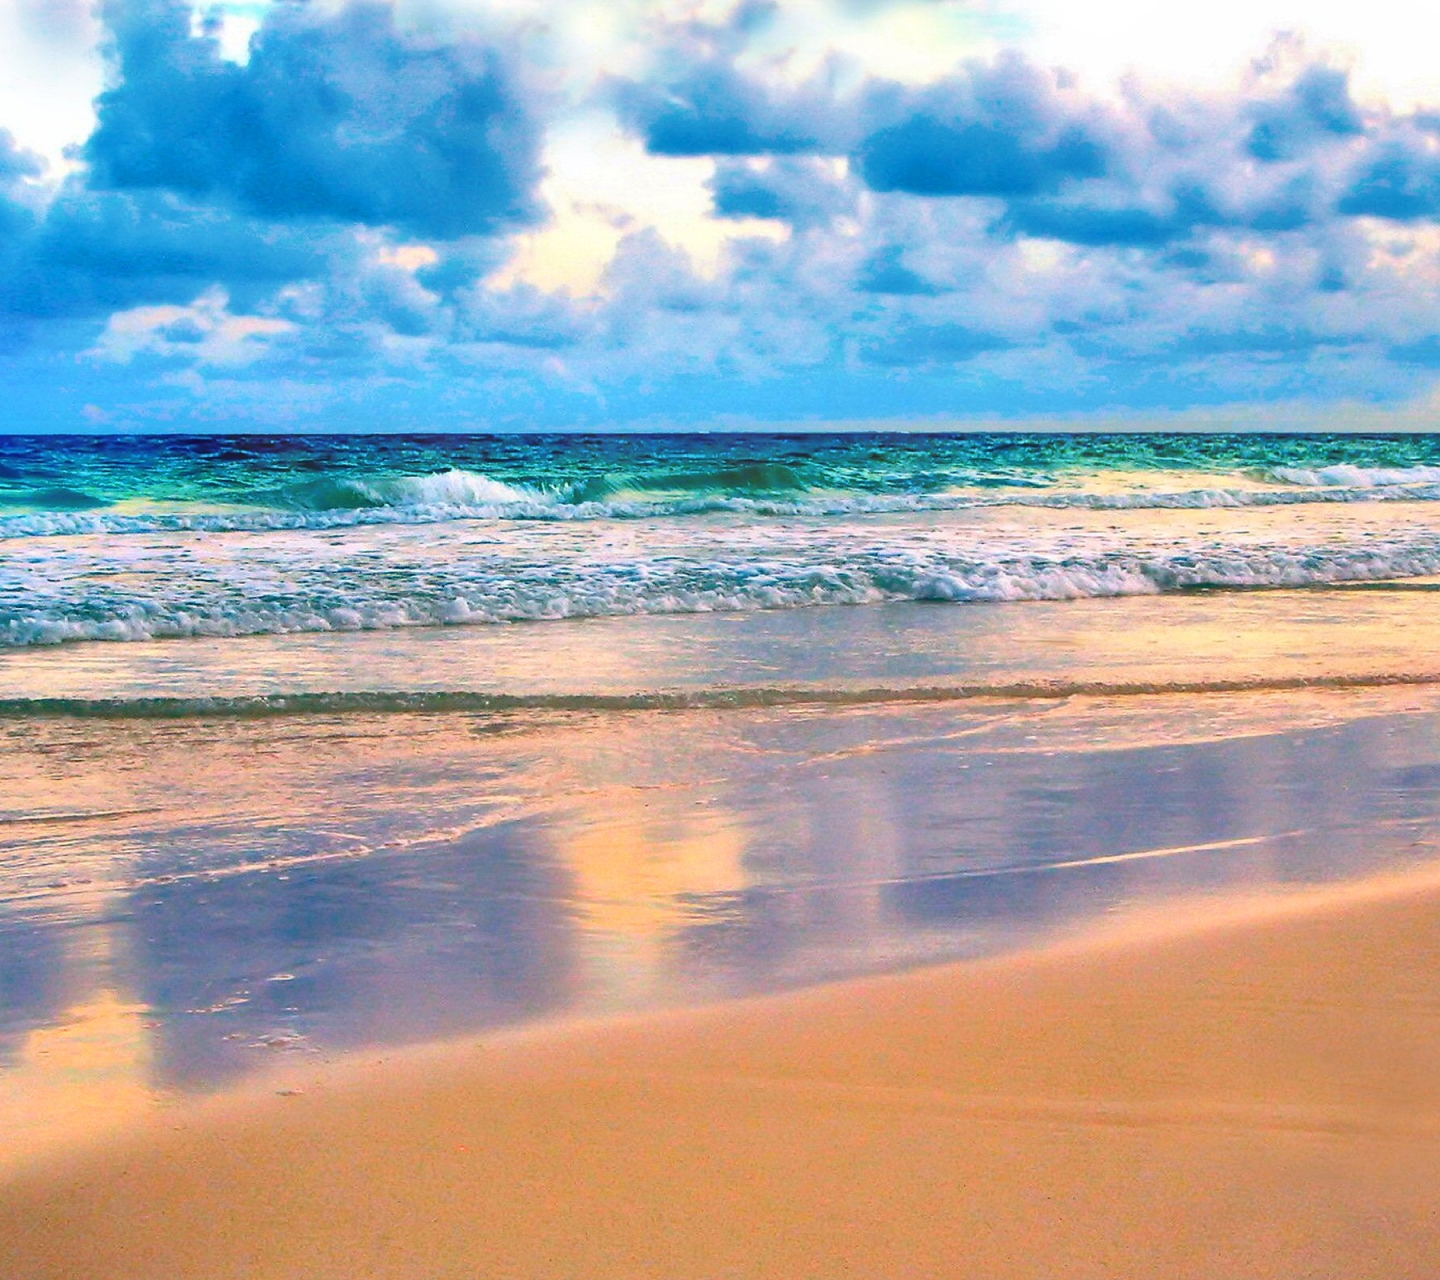 Скачать обои бесплатно Море, Облака, Пляж, Горизонт, Облако, Волна, Земля/природа картинка на рабочий стол ПК